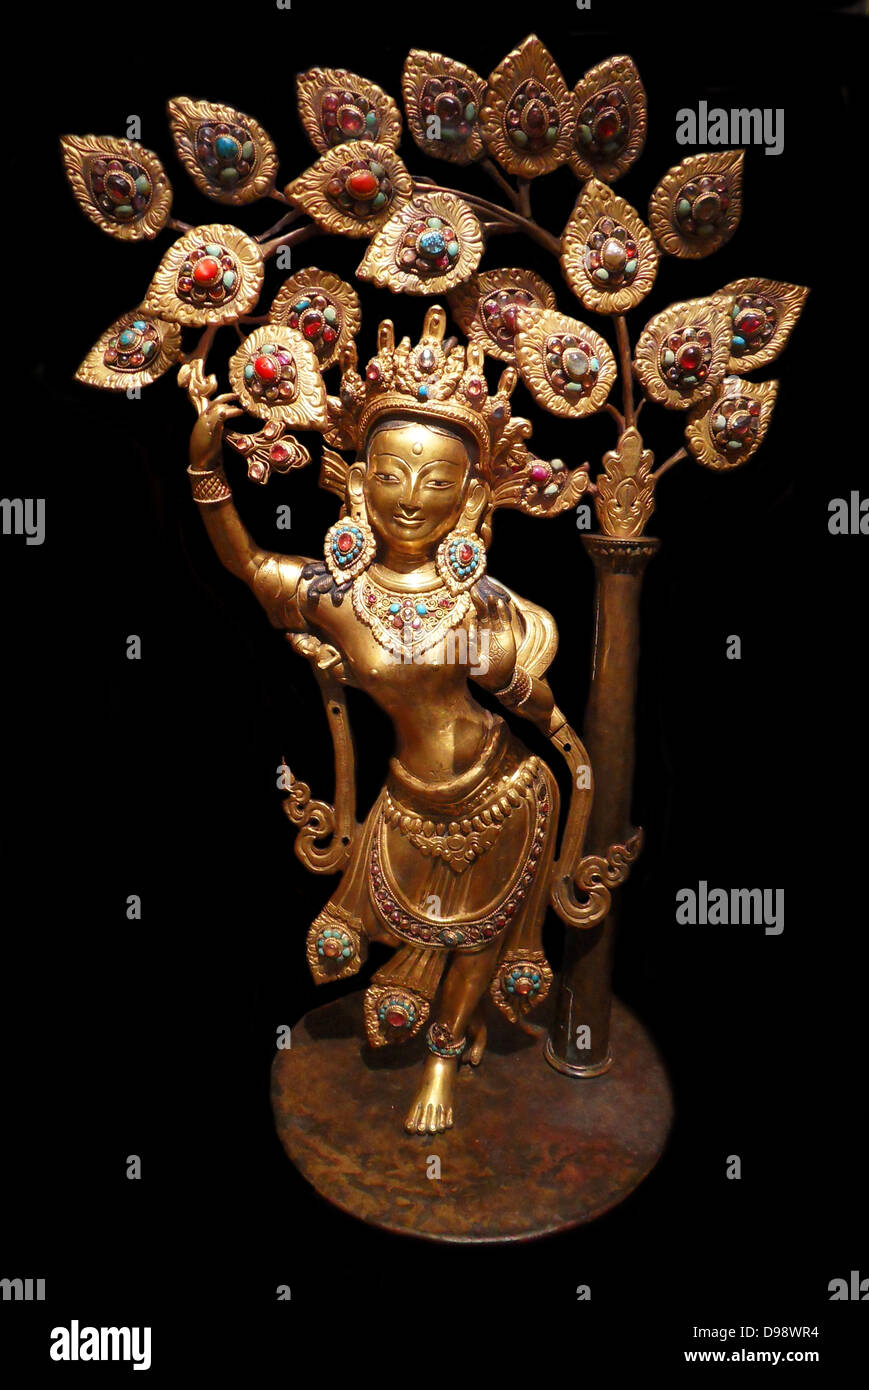 La reine Maya Devi donnant naissance au Prince Siddhartha, le futur Bouddha Cakyamuni. 19e siècle laiton, cuivre sculpture du Népal Banque D'Images